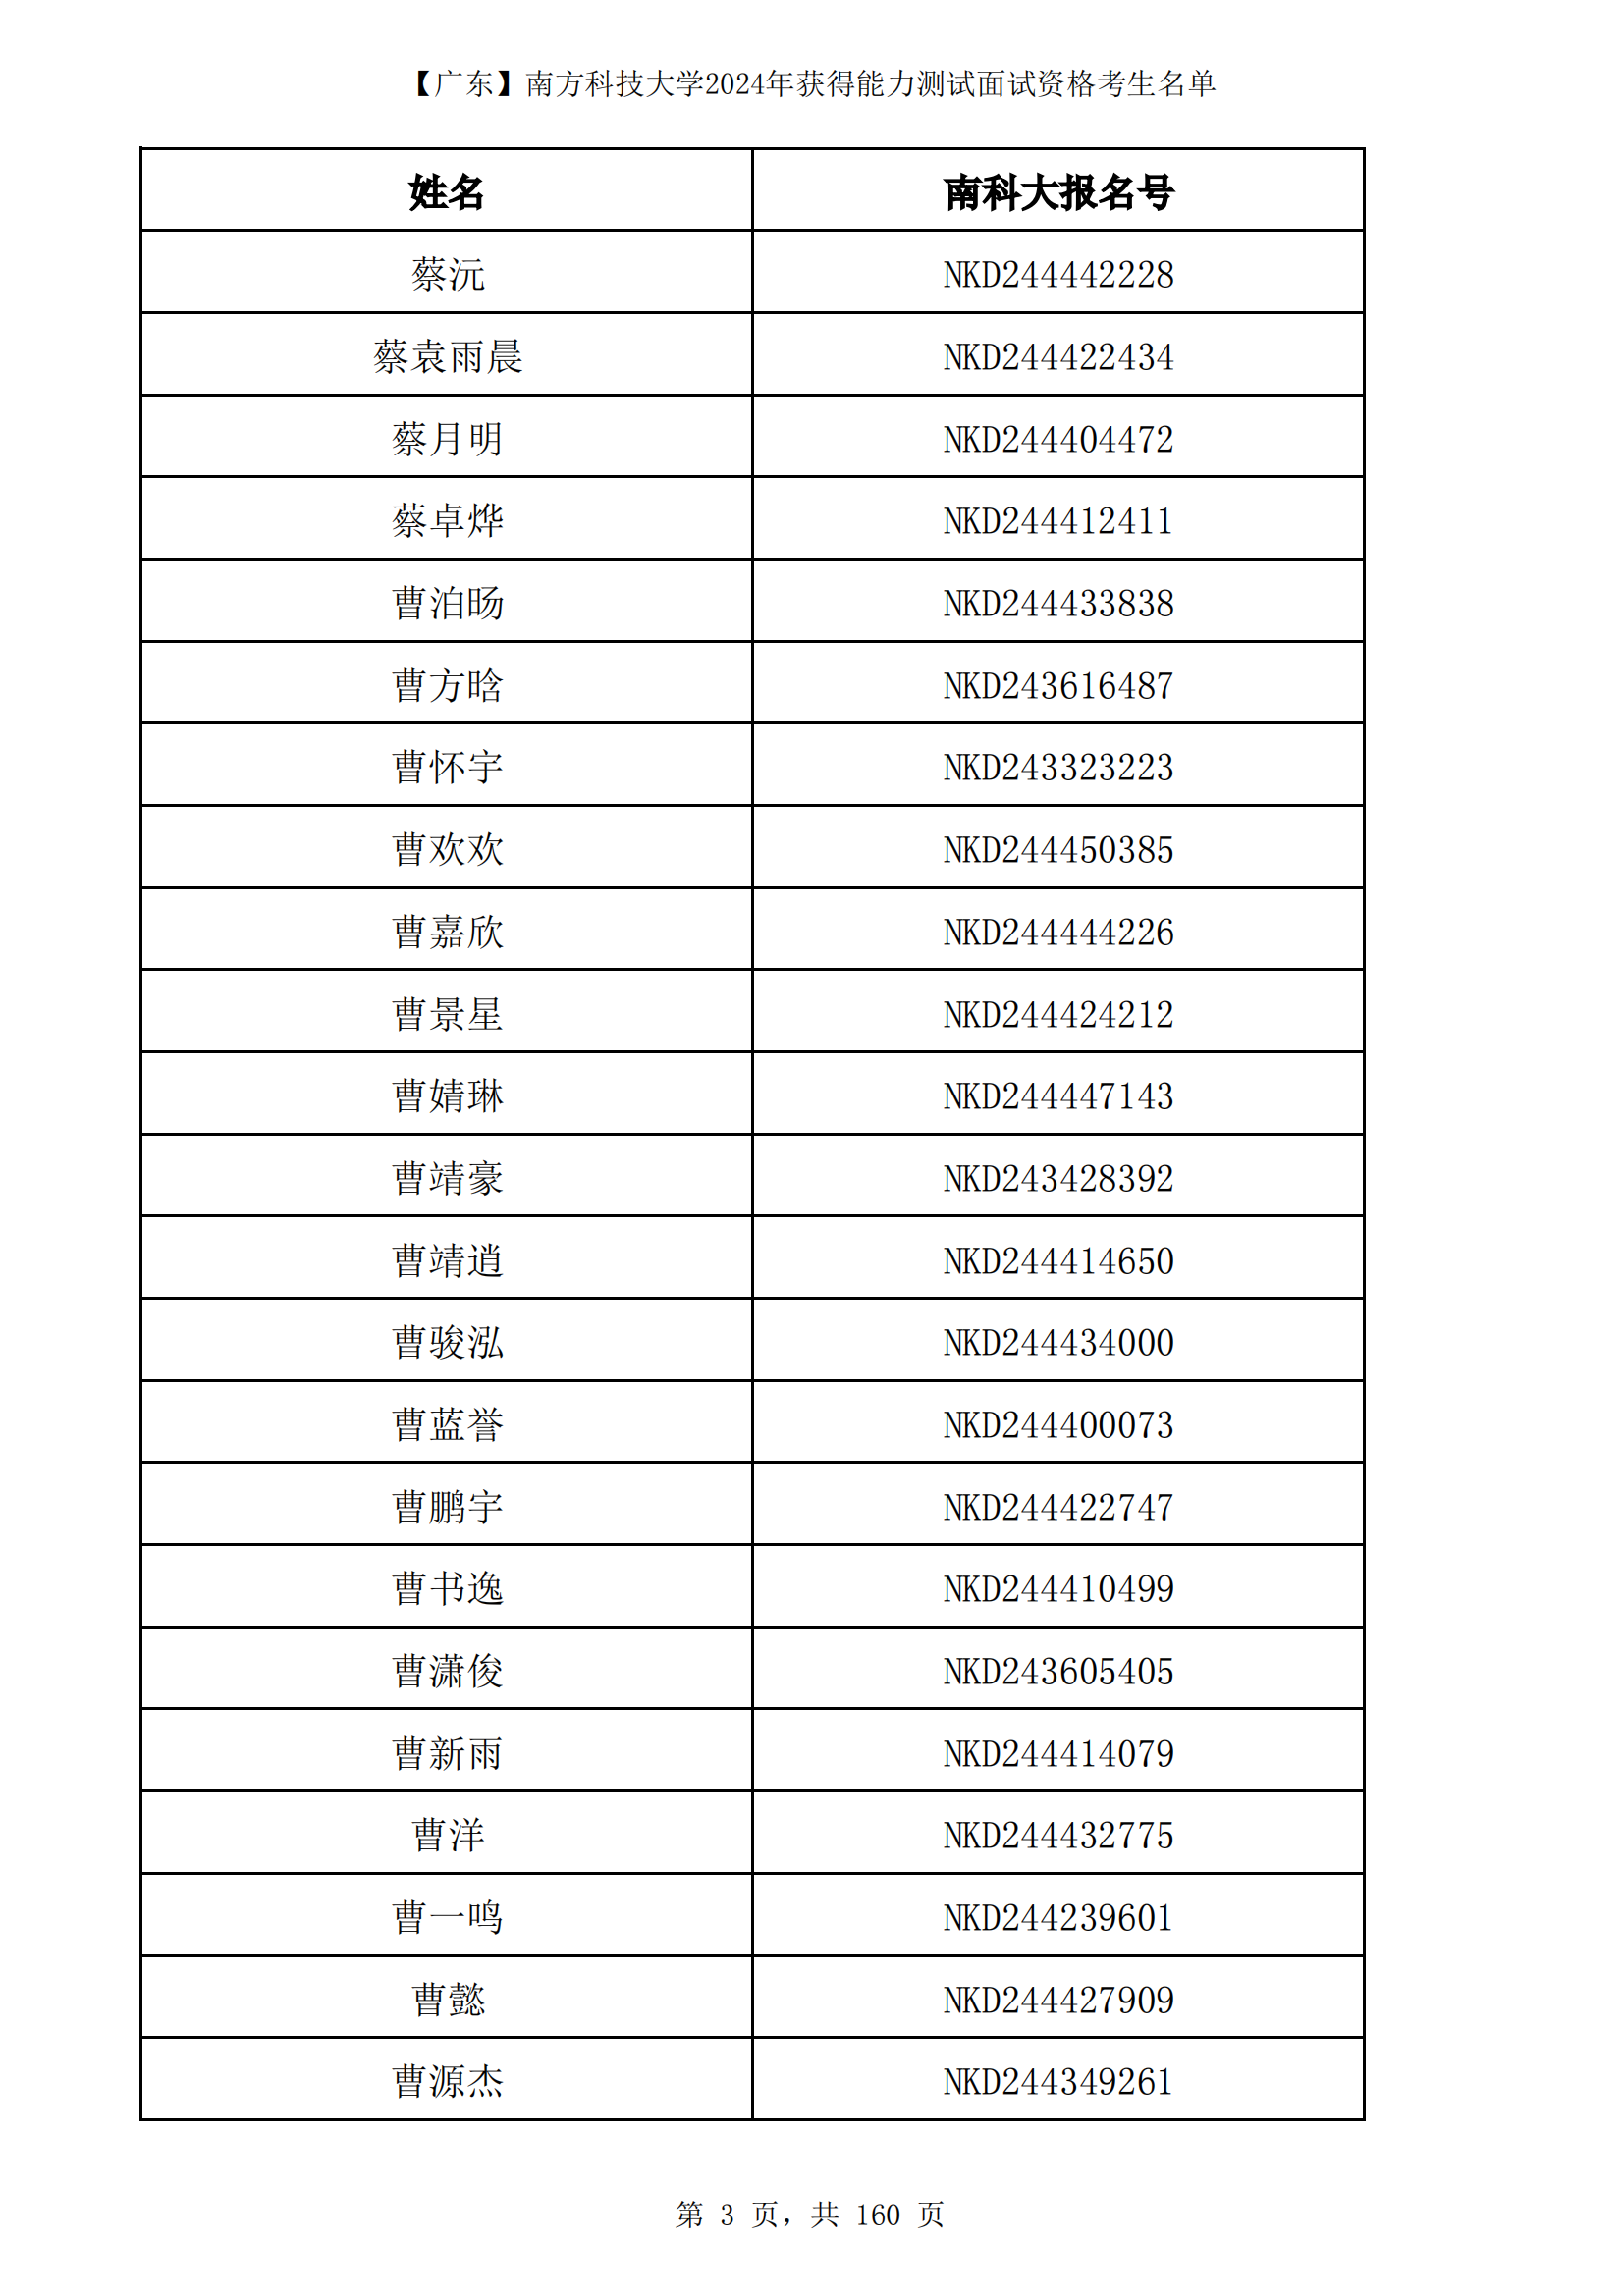 广东省南方科技大学2024年综合评价面试资格考生名单